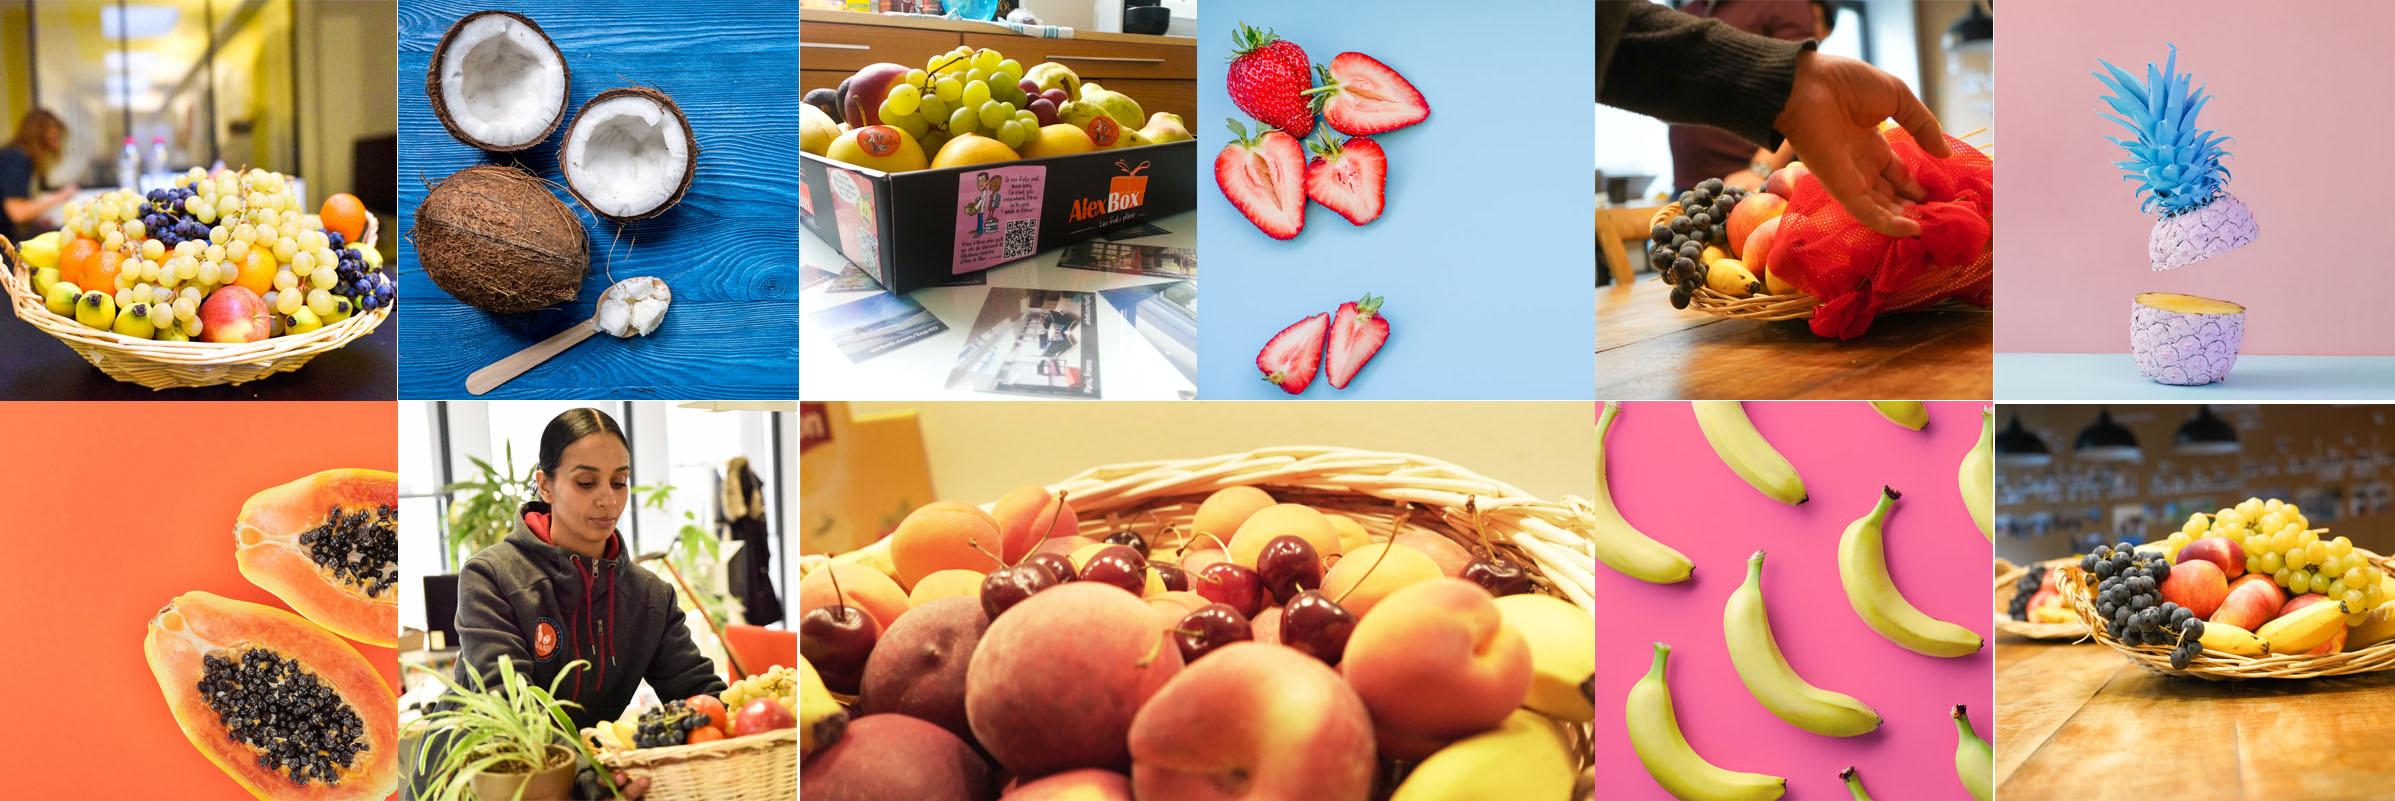 Service de livraison de corbeilles de fruits au bureau pour les entreprises à Paris